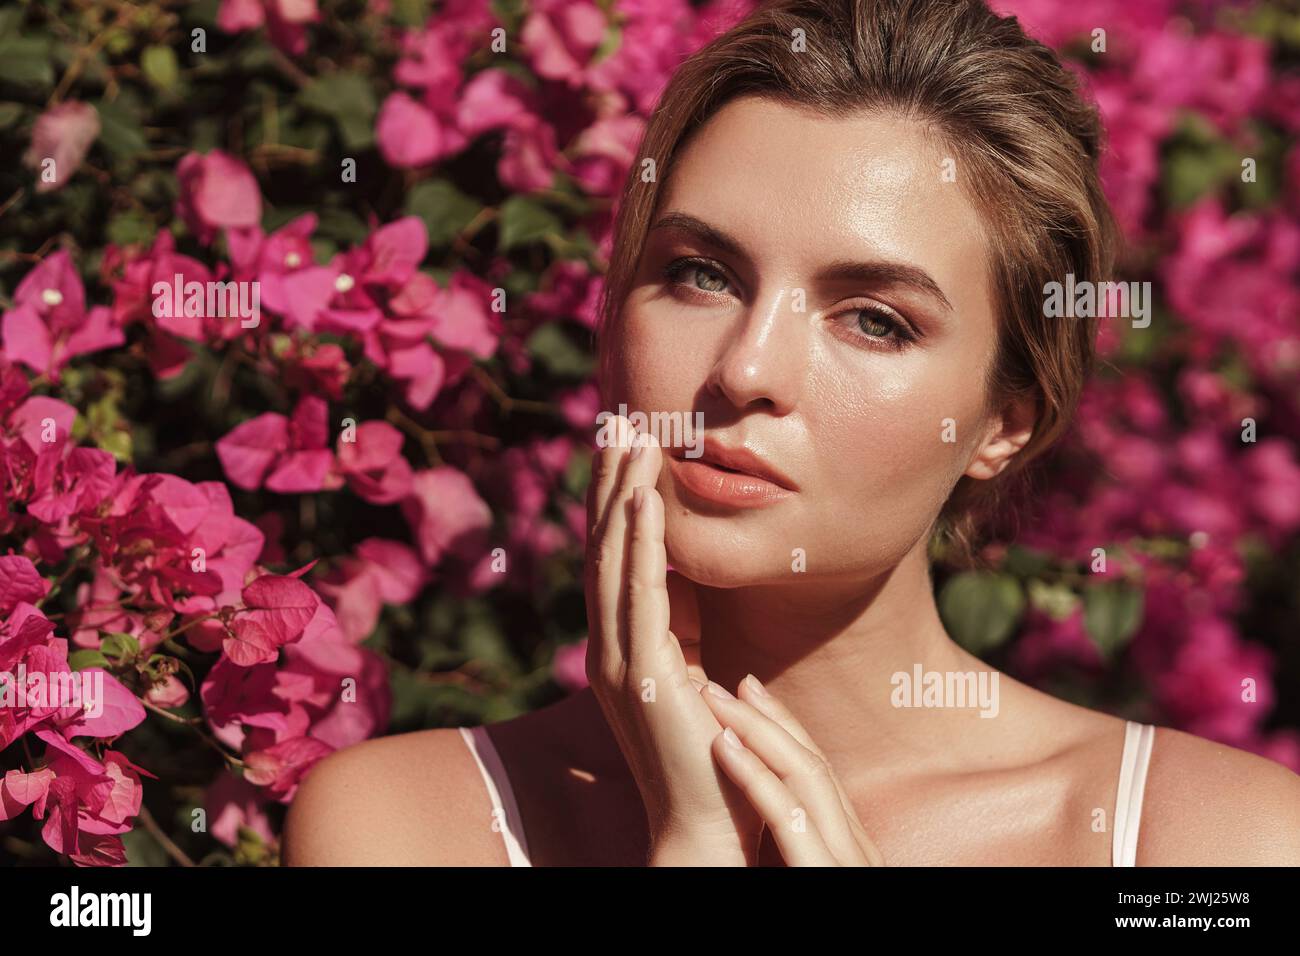 Belle femme blonde avec la peau lisse et le maquillage naturel, comme elle pose sur un fond d'un buisson avec des fleurs roses délicates Banque D'Images